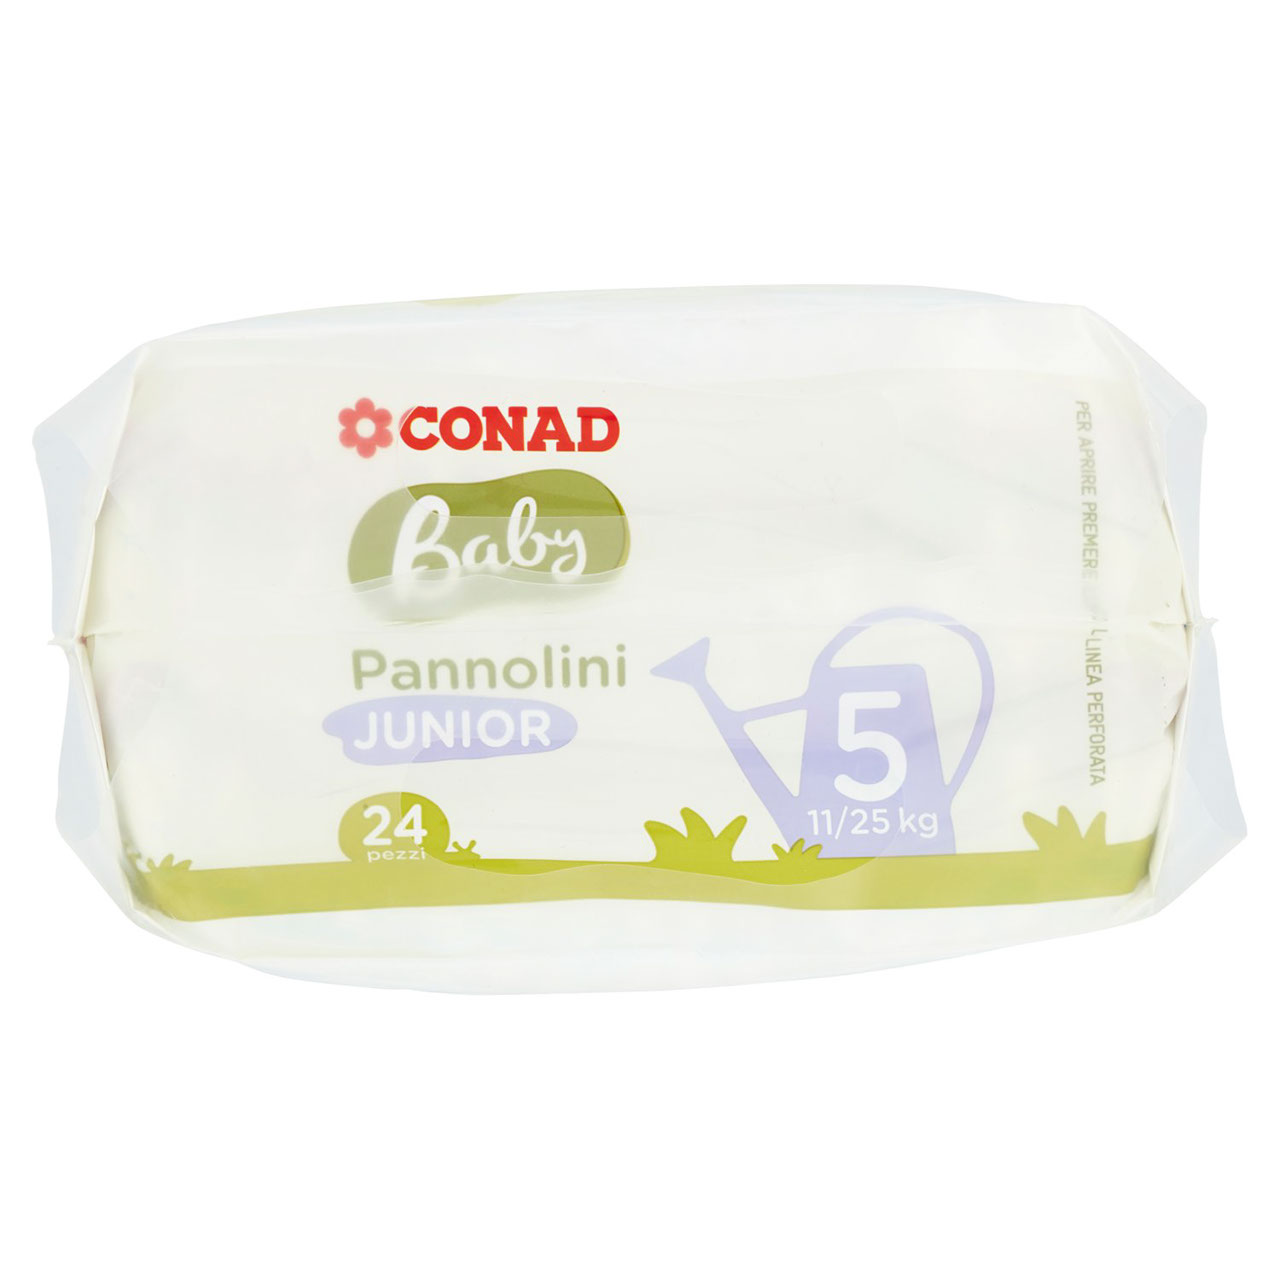 Baby Pannolini Junior 5 11/25 kg 24 pezzi Conad